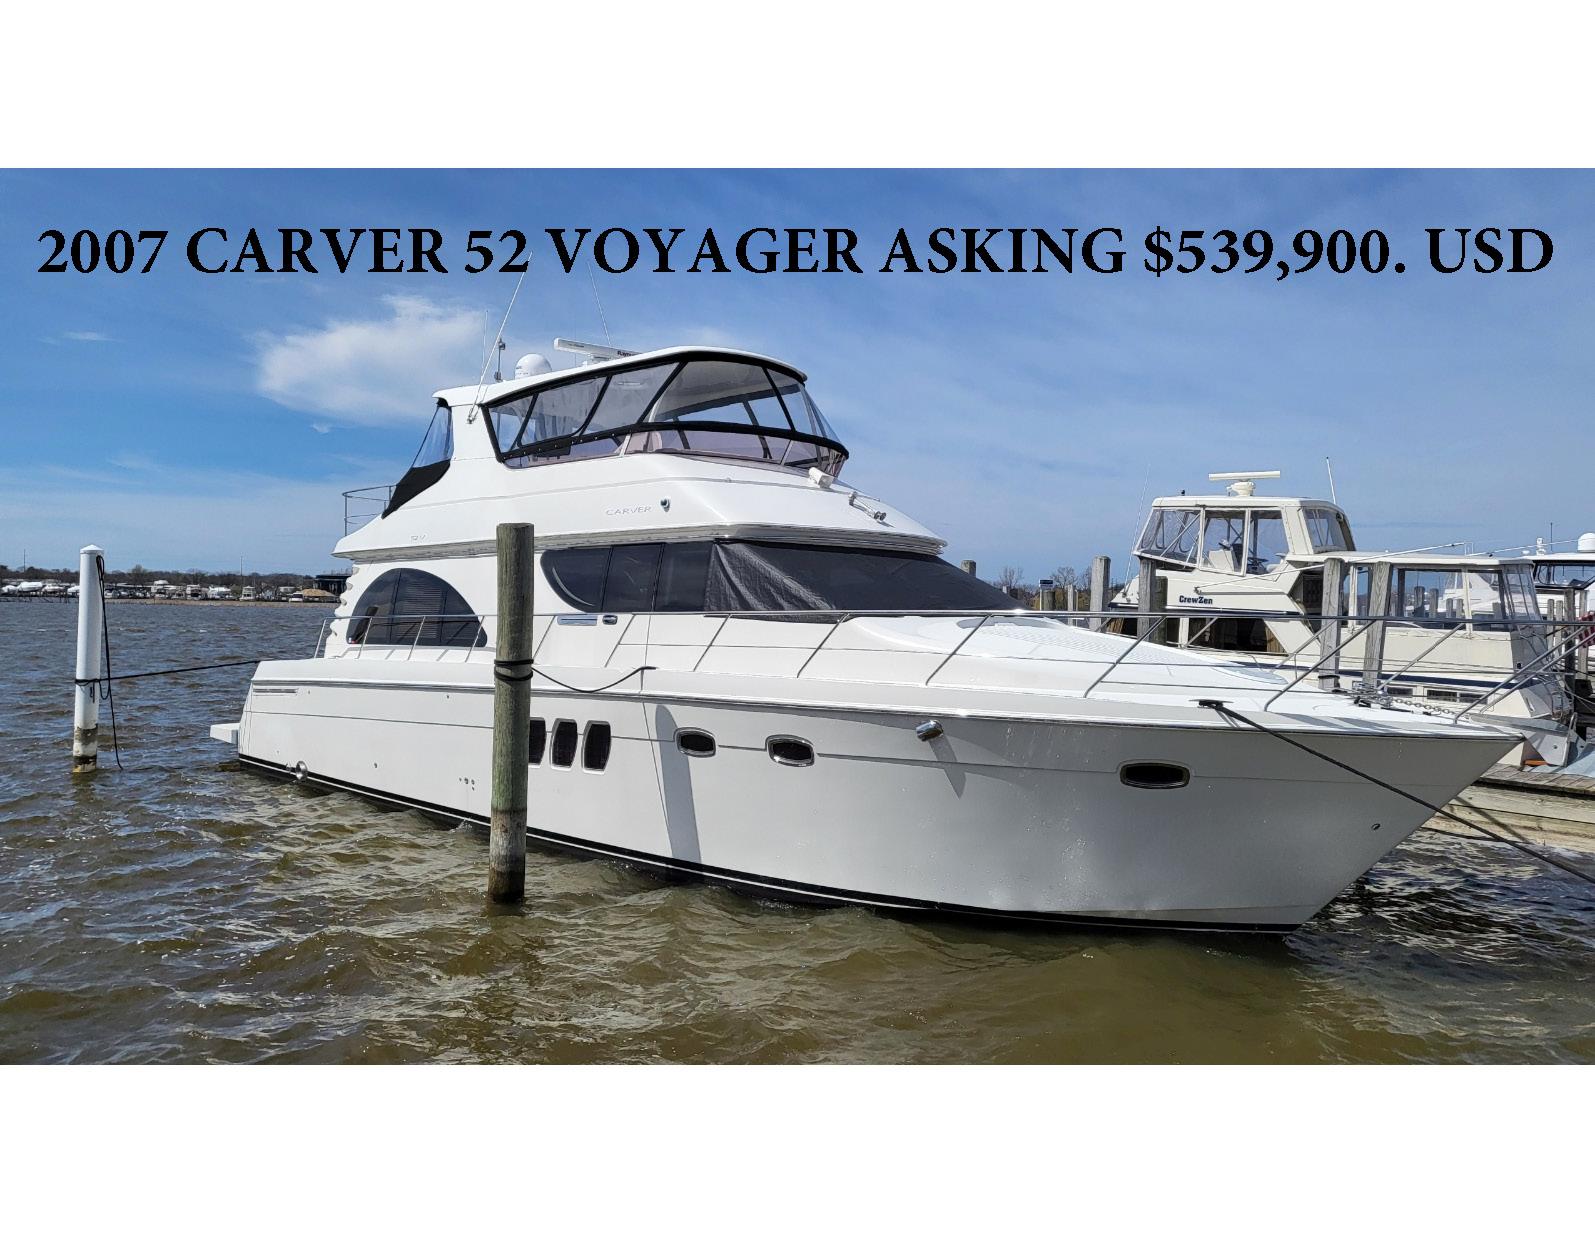 2007 Carver 52 Voyager